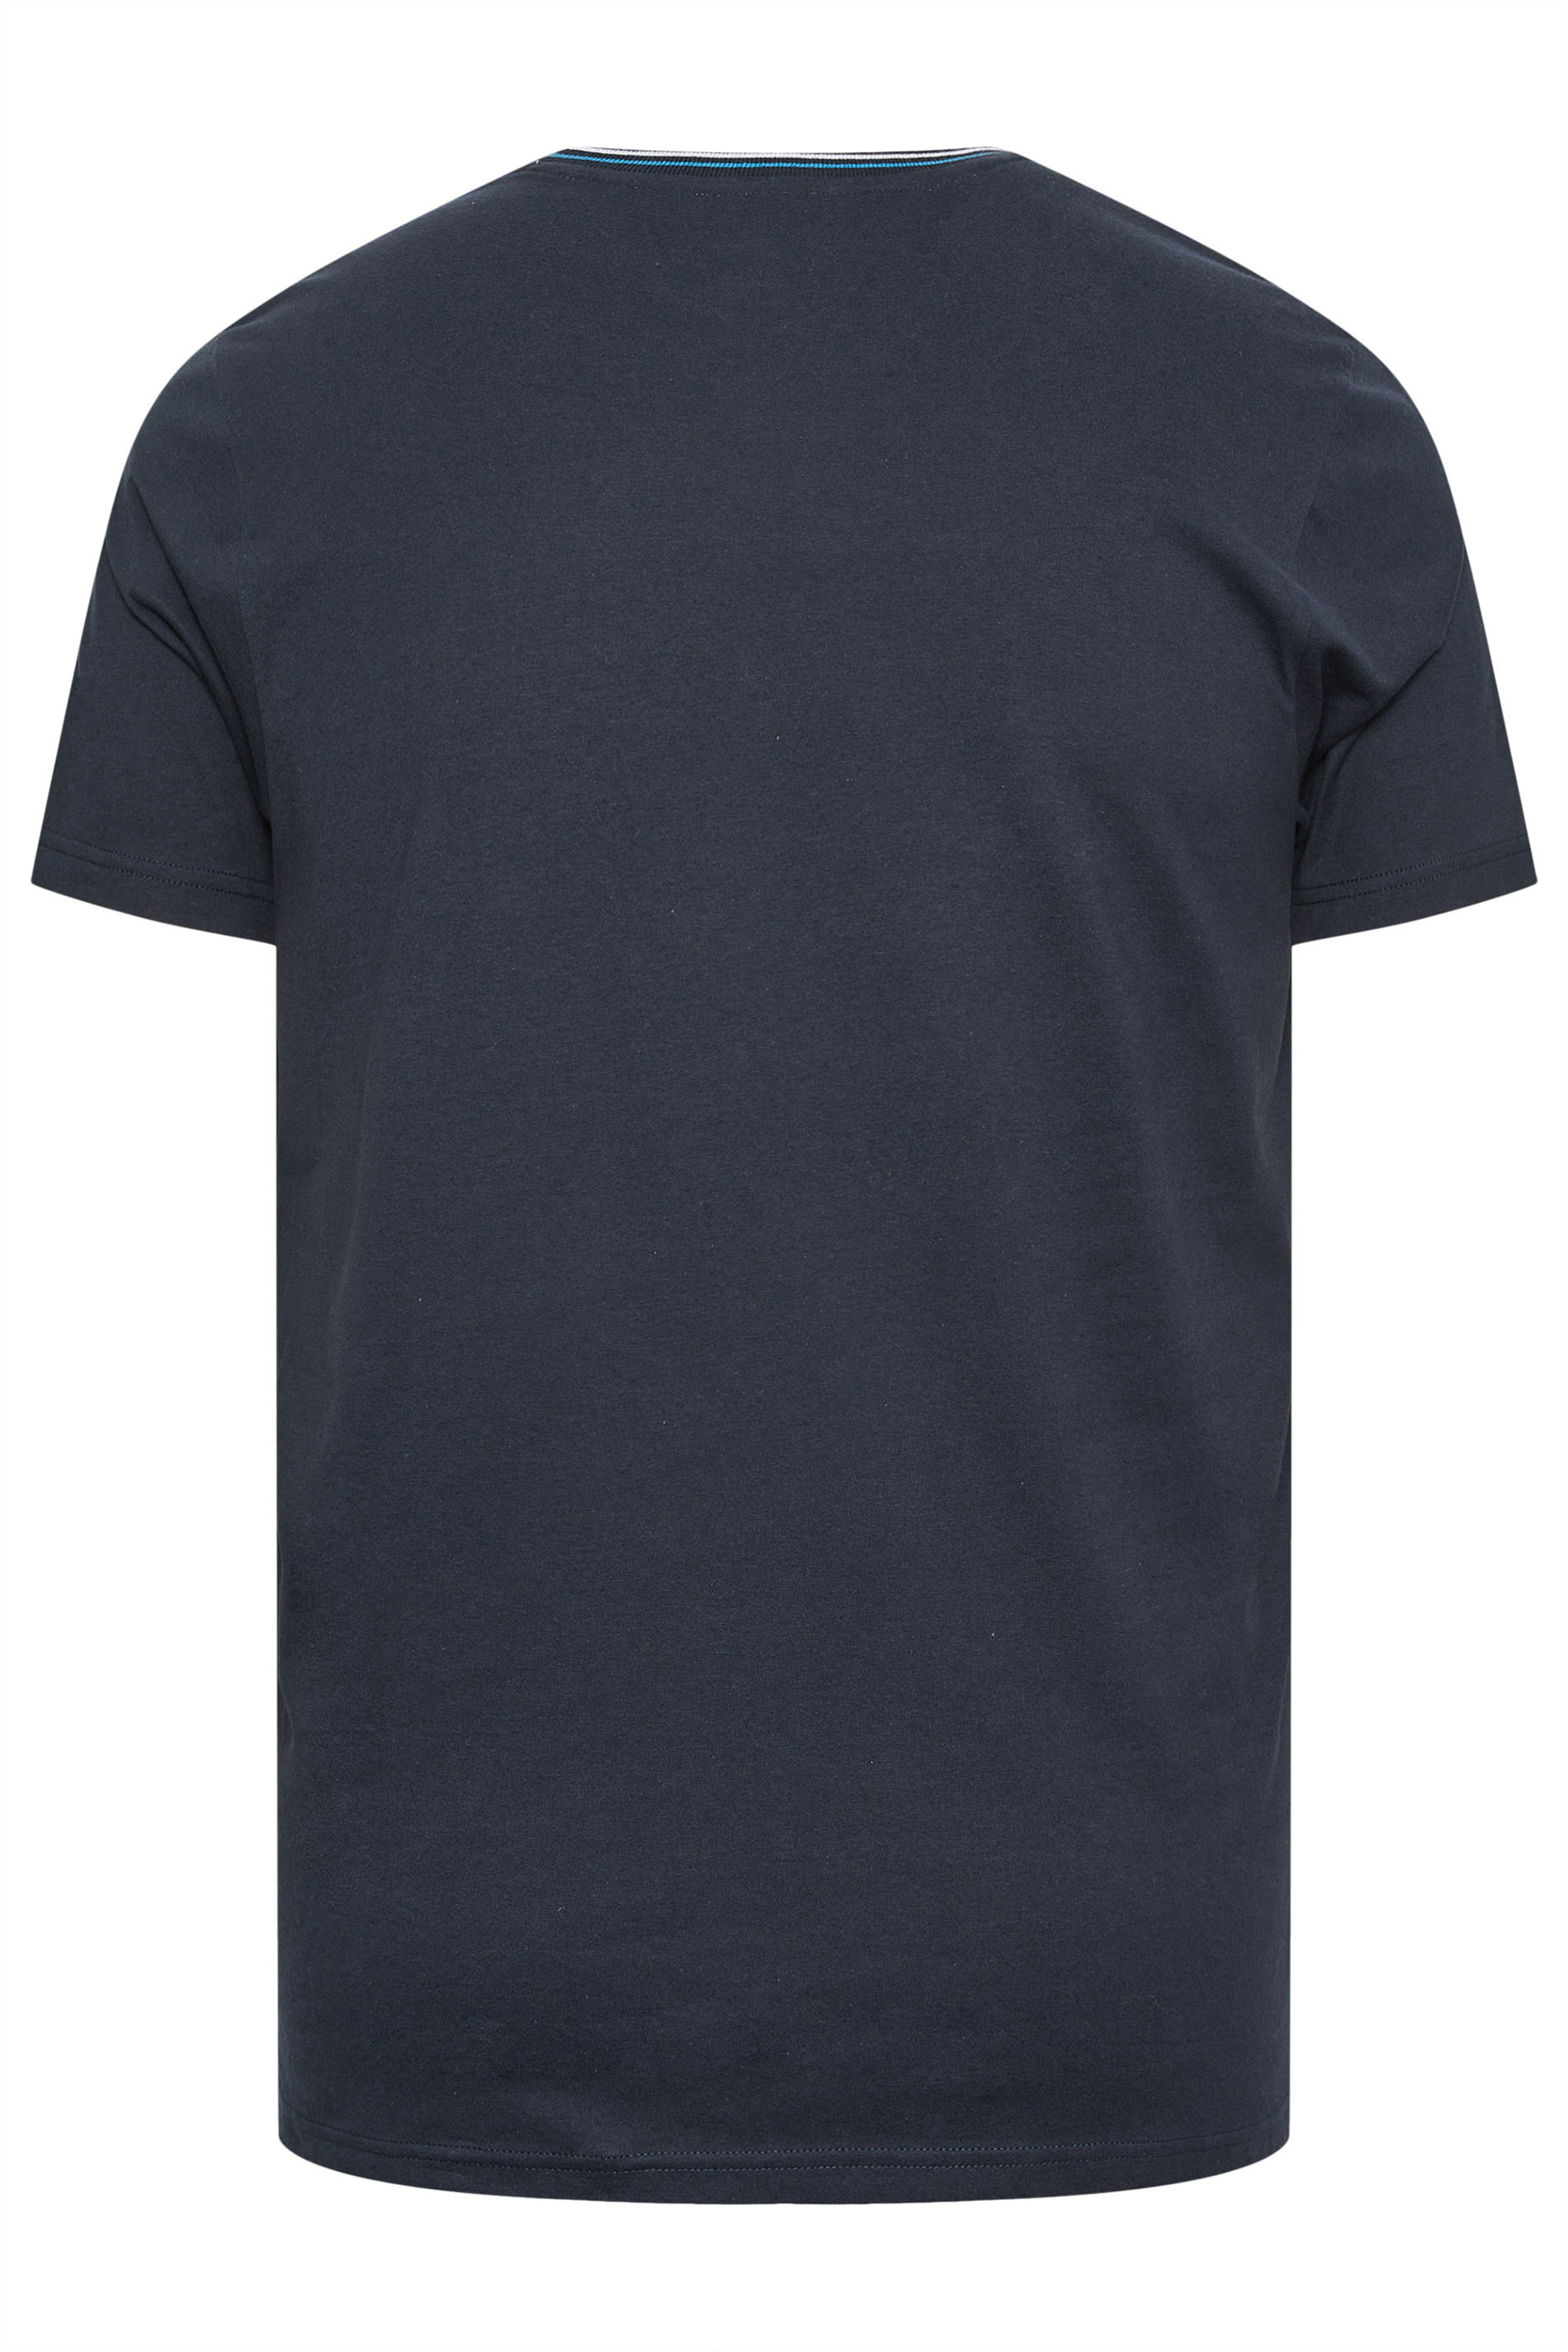 BadRhino Big & Tall Navy Blue & White Chest Stripe T-Shirt | BadRhino 3